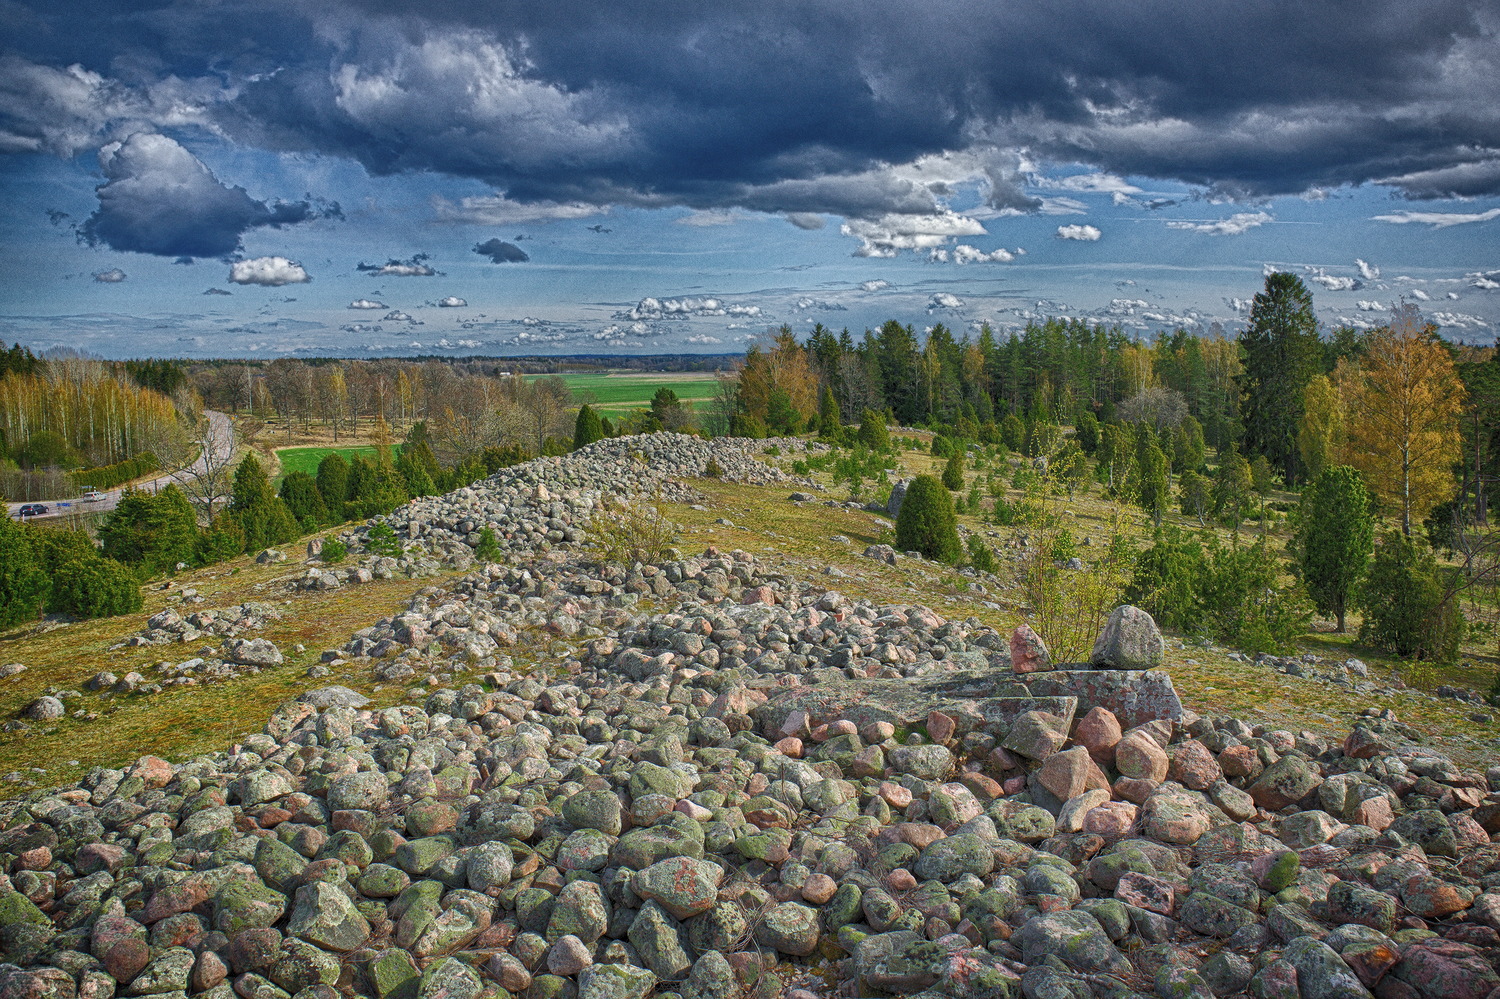 210502.jpg - Ett par mil från Västerås ligger Hornsåsen, Västmanlands största gravfält med ca 190 gravar från brons- och järnåldern. 2021-05-02.